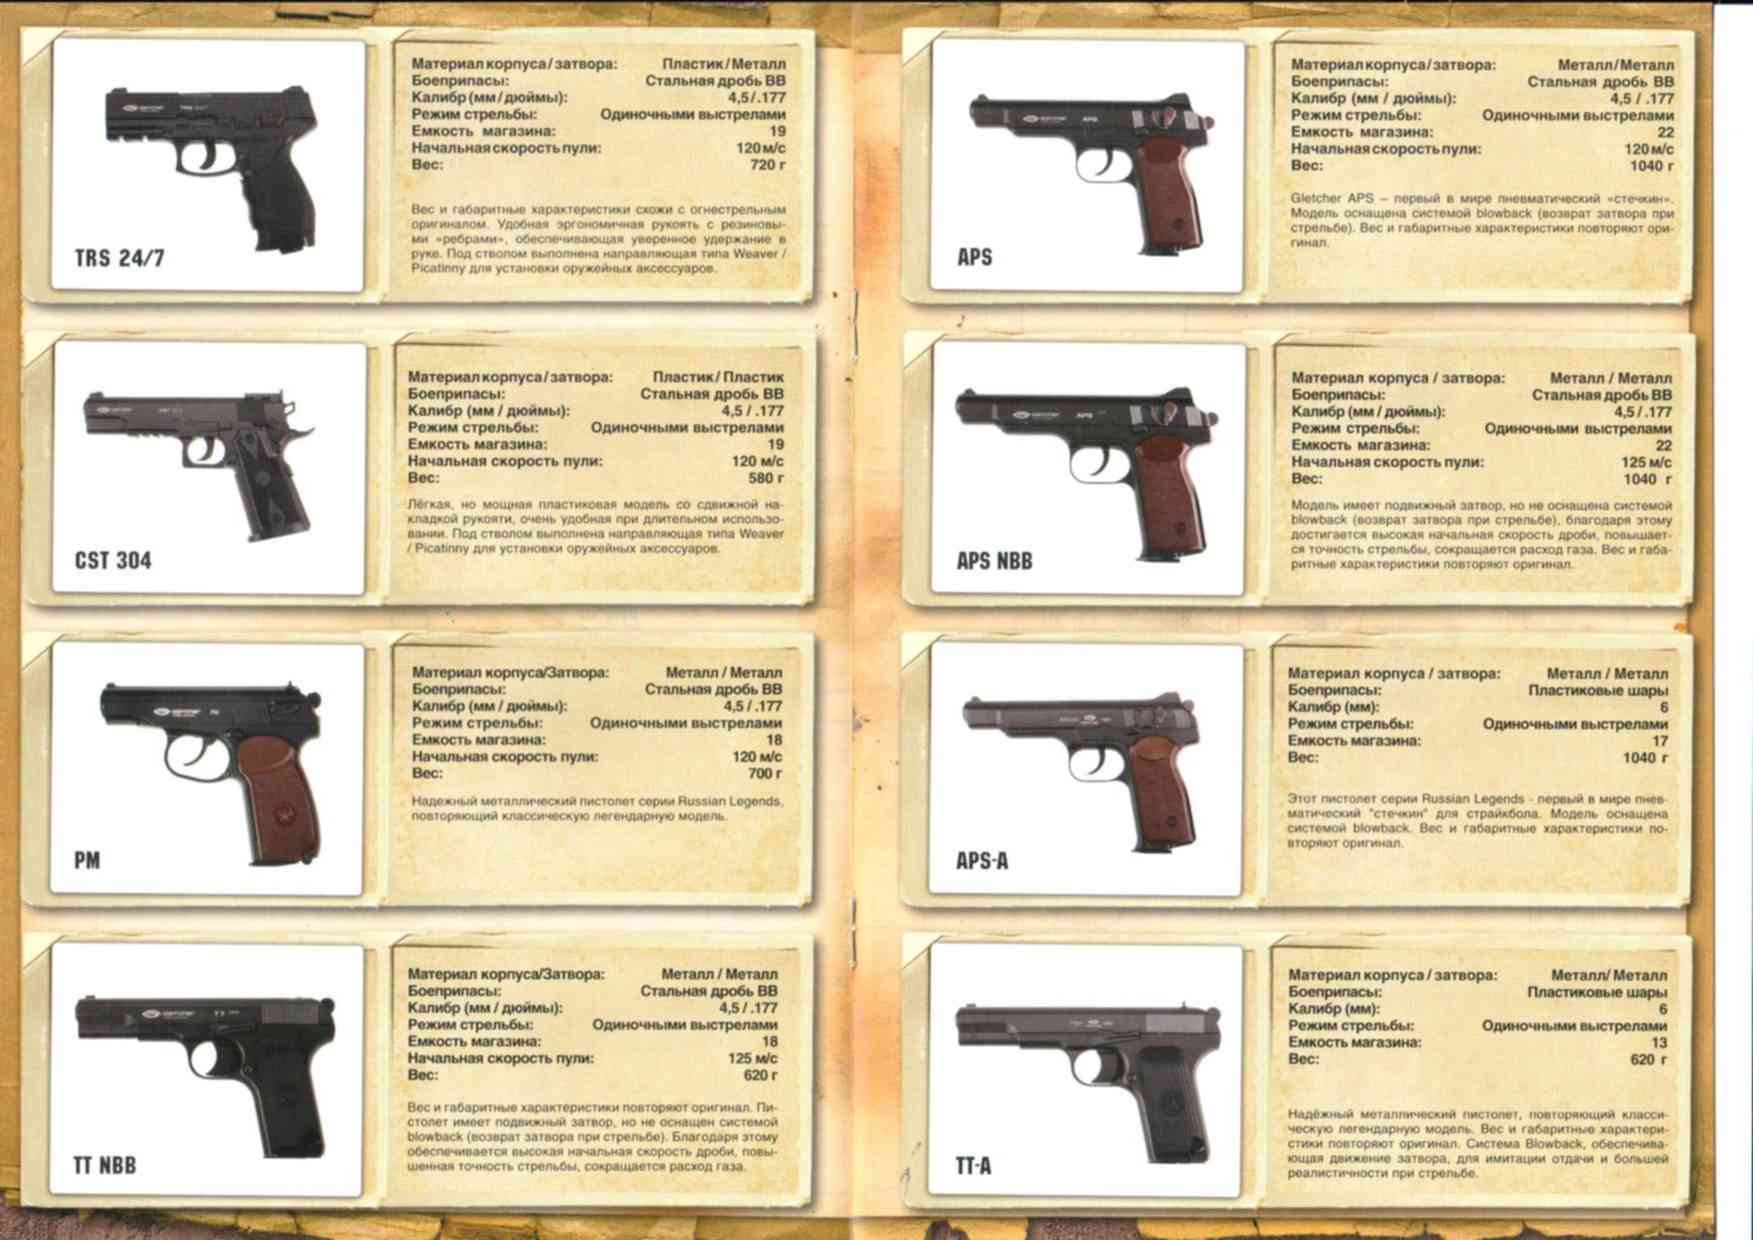 Пл характеристики. Технические характеристики пистолета Лебедева 15. Технические характеристики пистолета Лебедева.